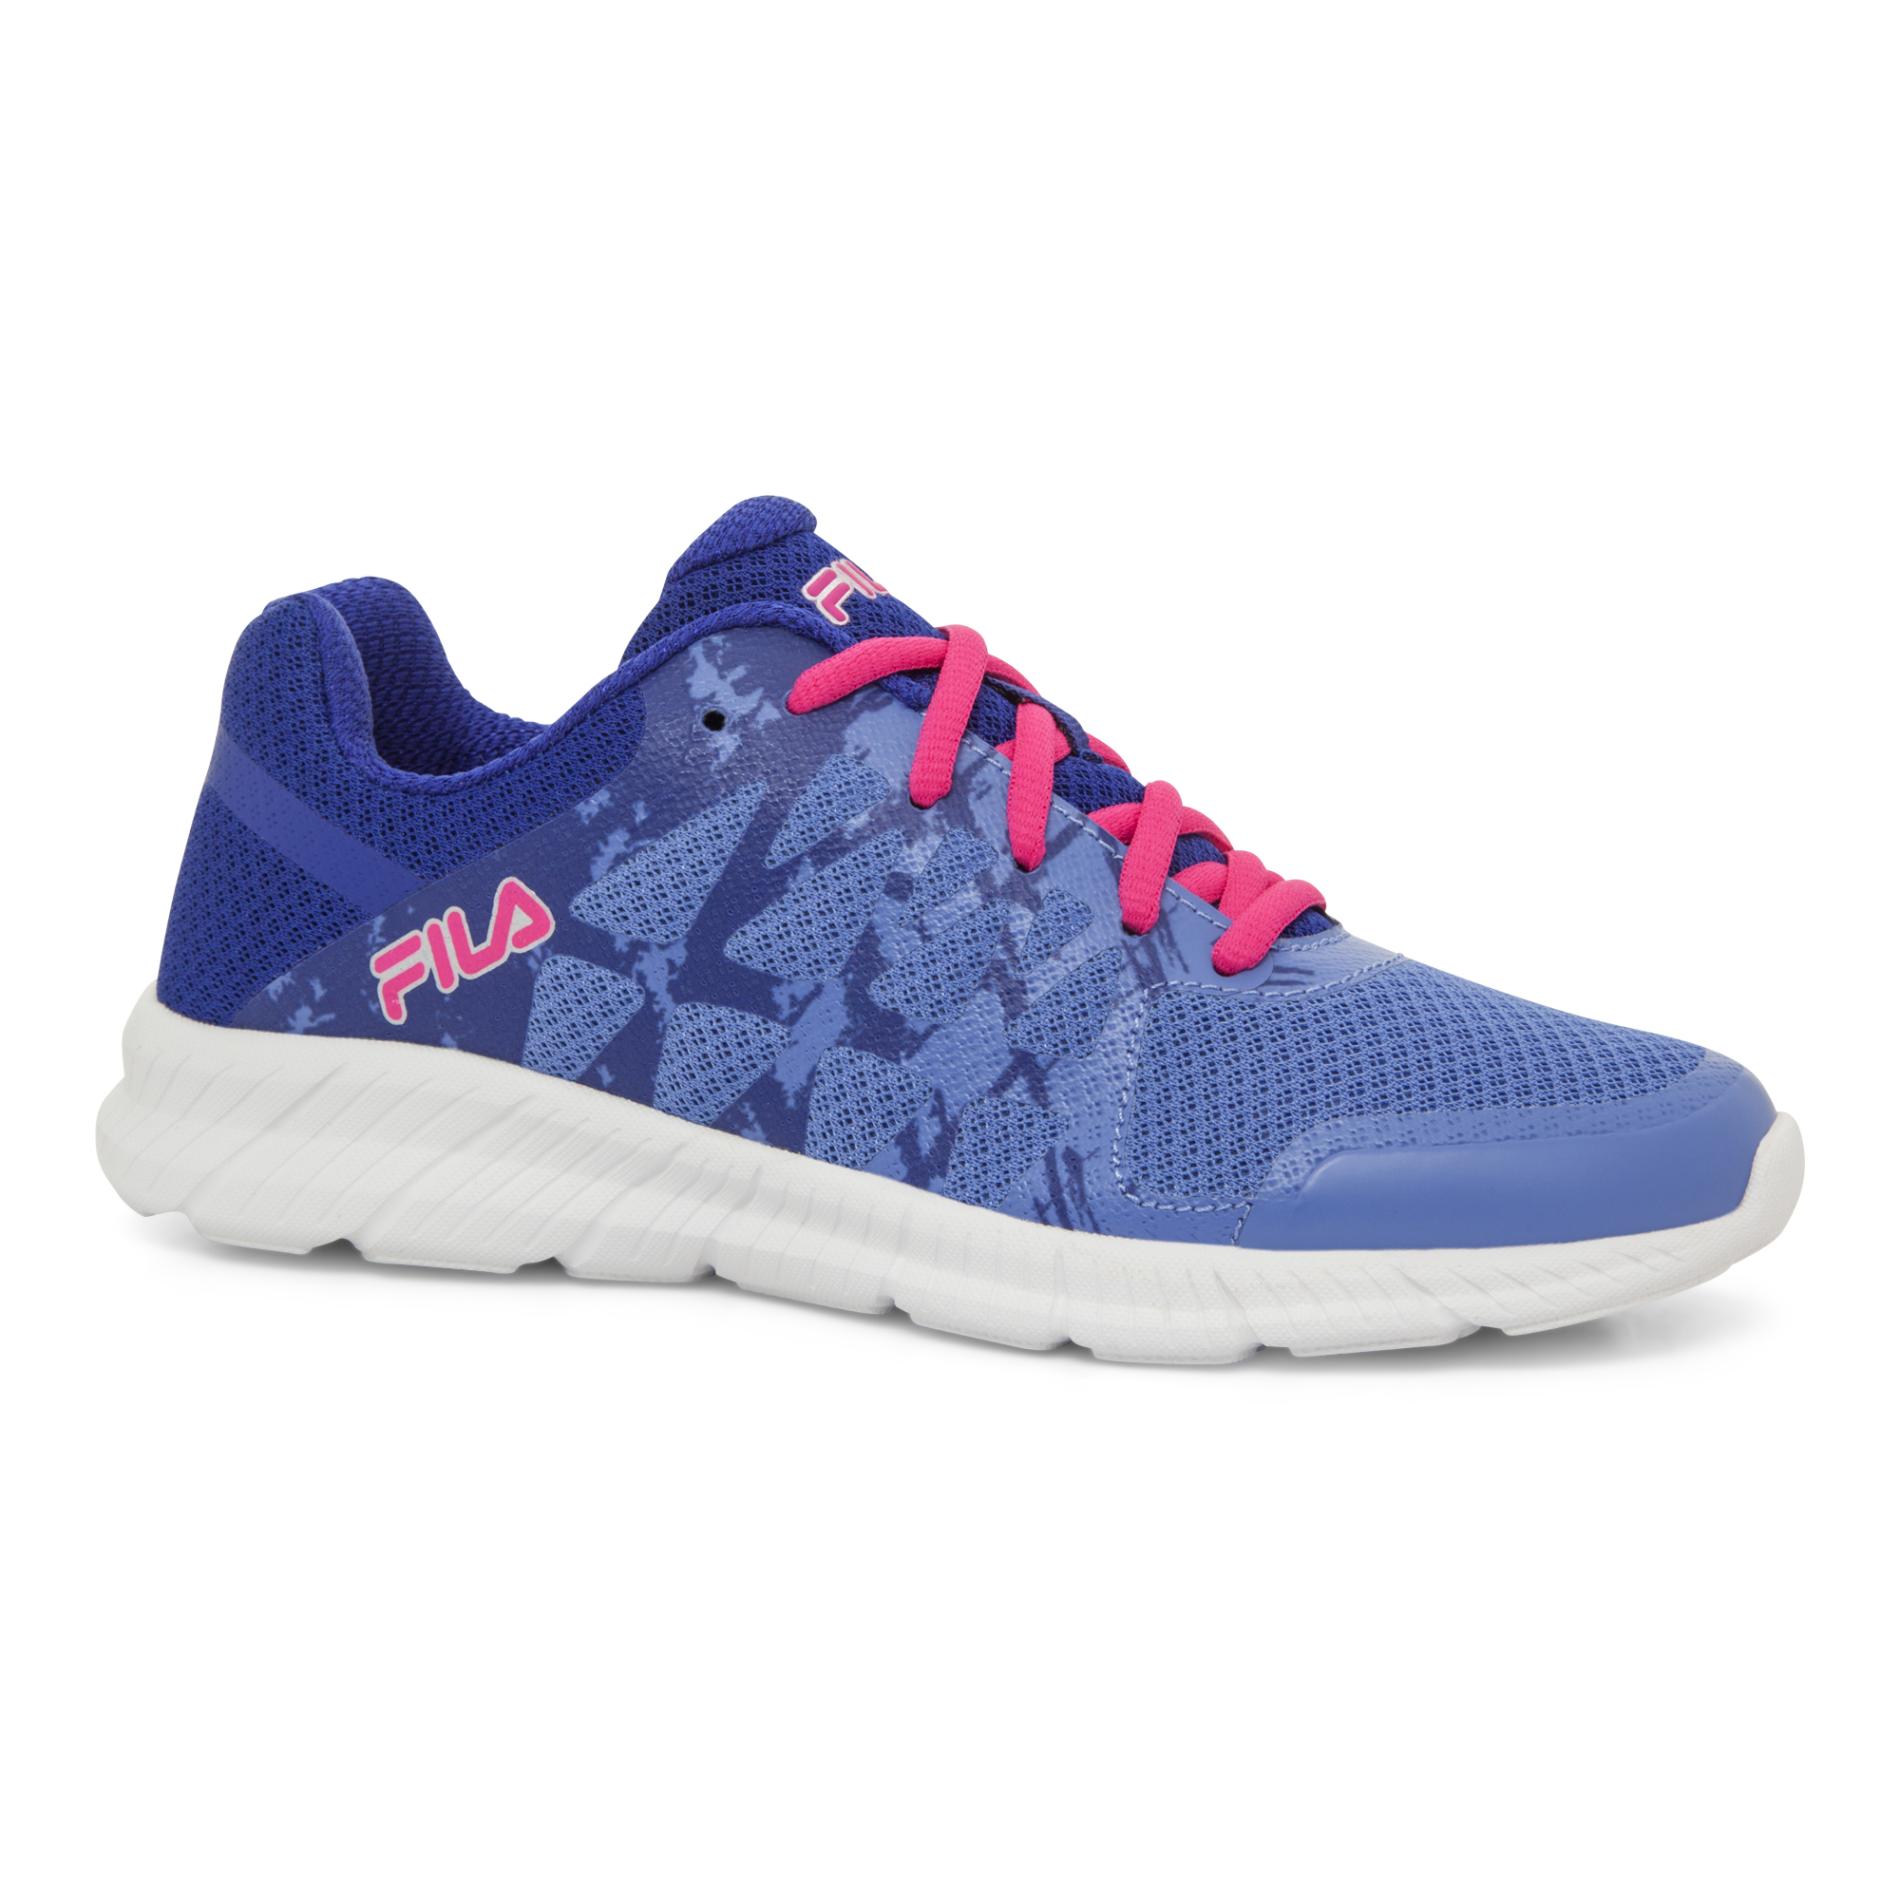 Fila Women's Finity Athletic Shoe - Blue/Pink